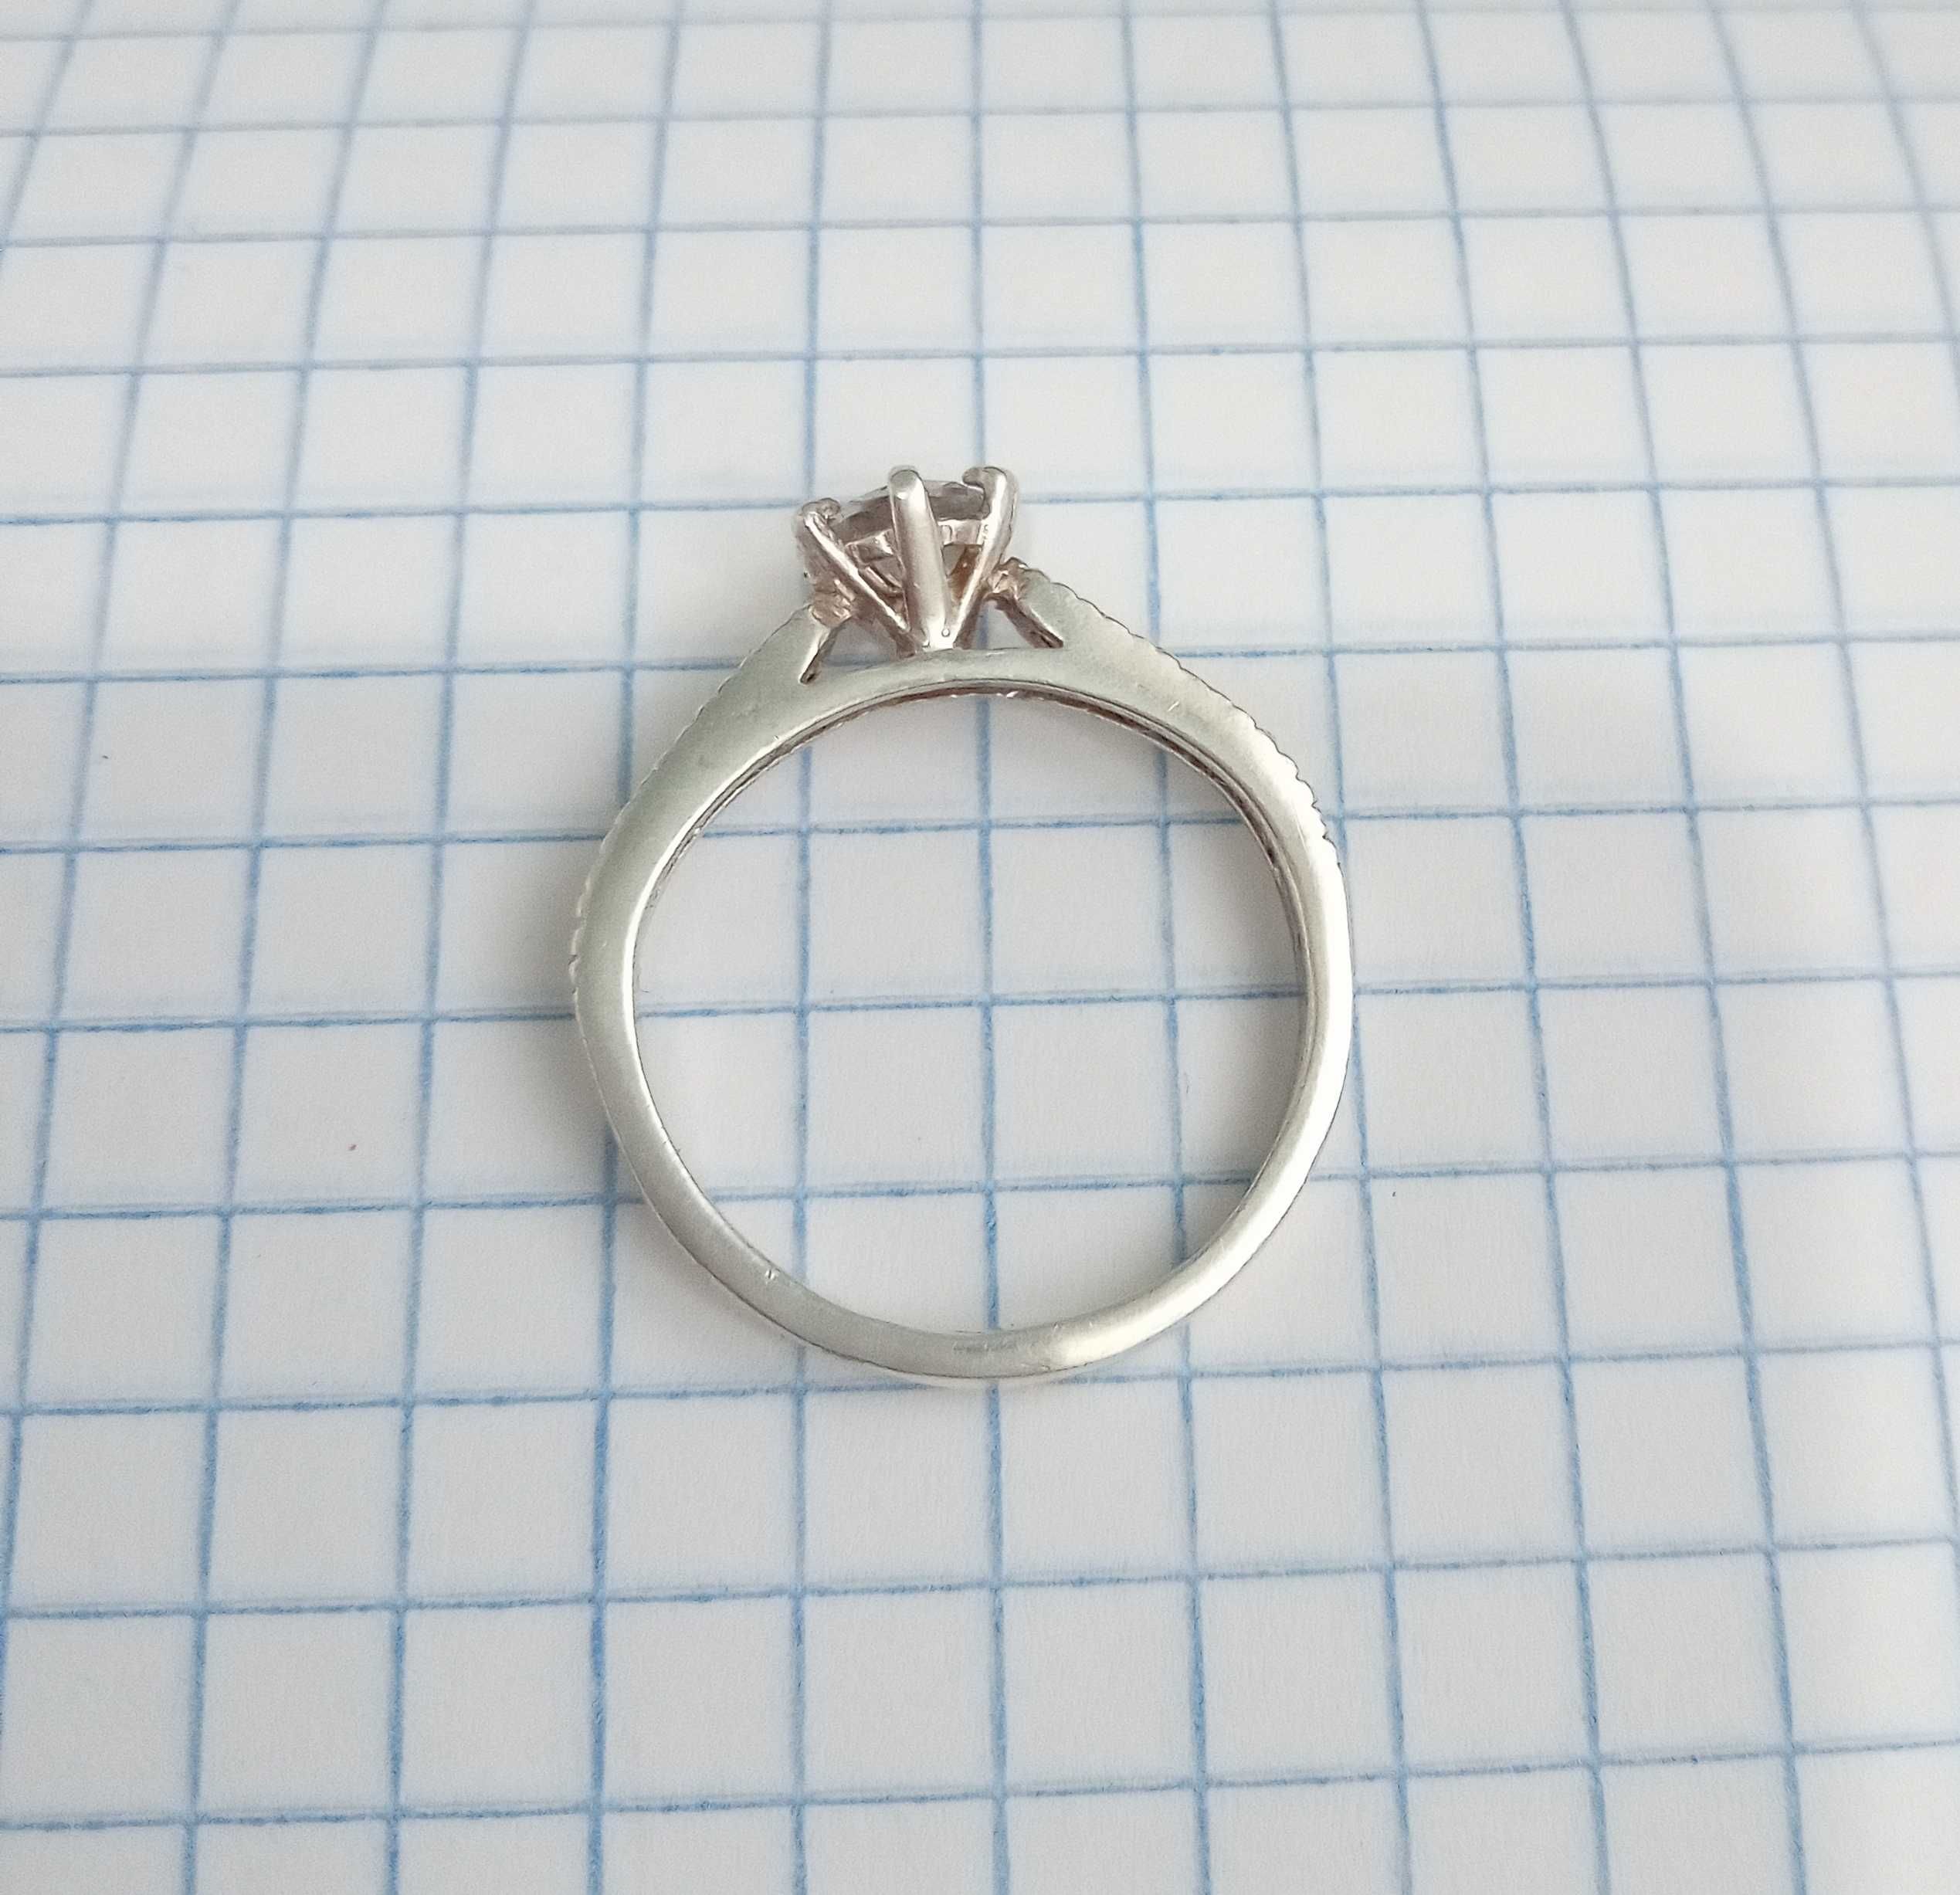 Кольцо колечко с камнями серебро 925 проба, 17,5 размер, винтаж